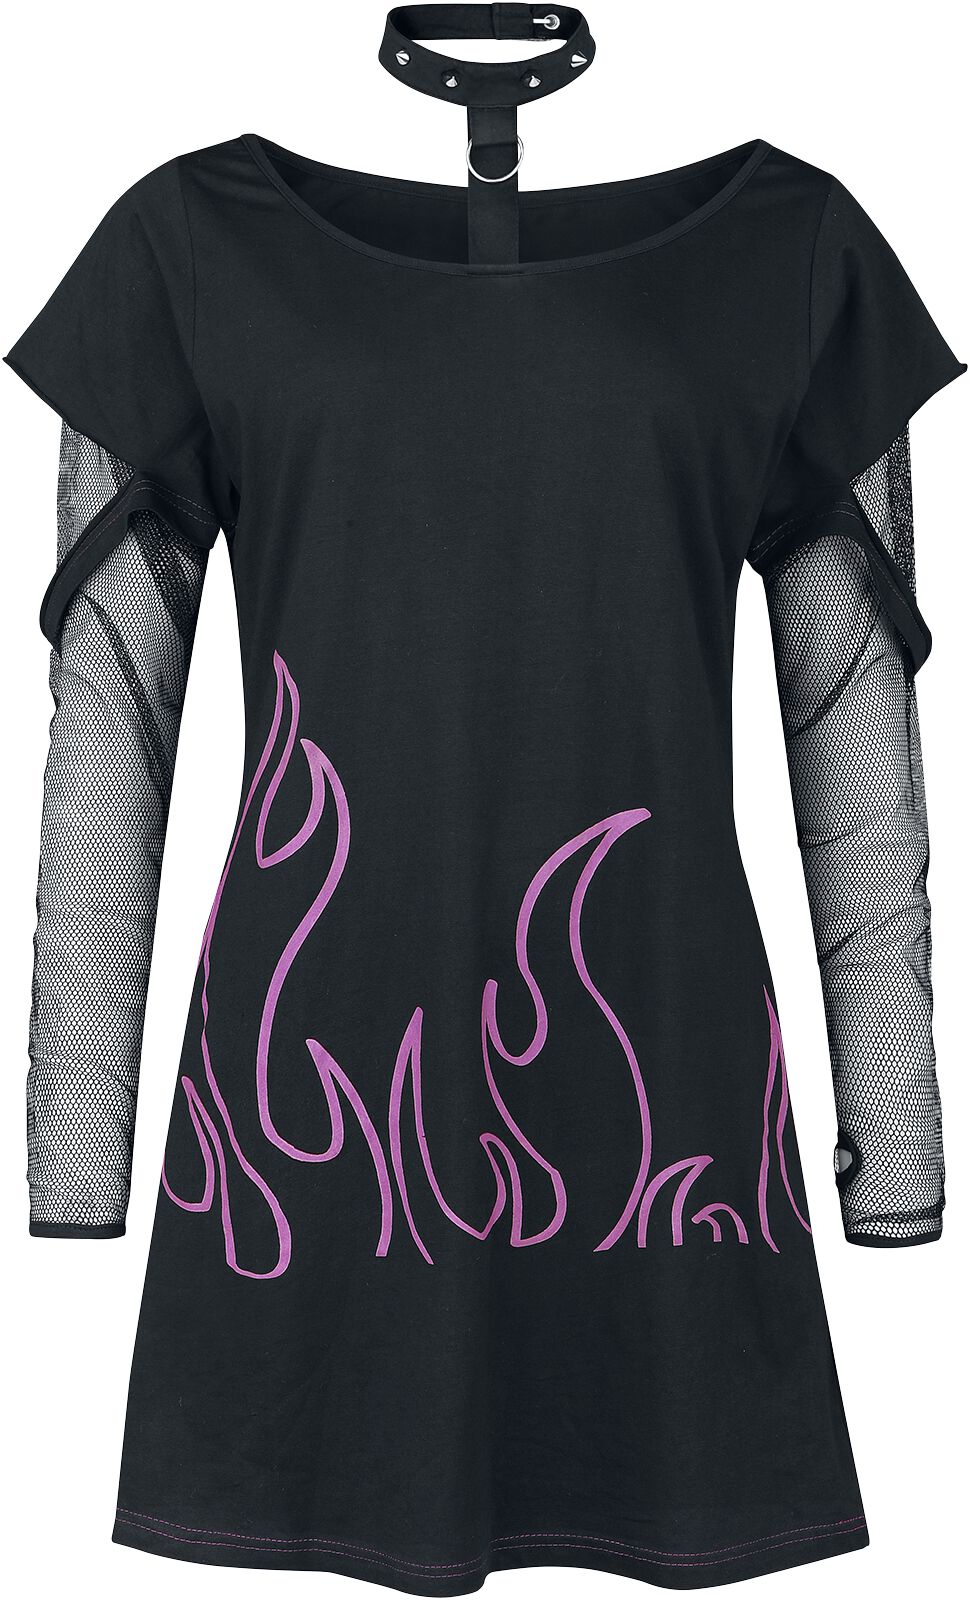 Heartless - Gothic Langarmshirt - Depths Of Hell Top - XS bis 4XL - für Damen - Größe XL - schwarz/pink